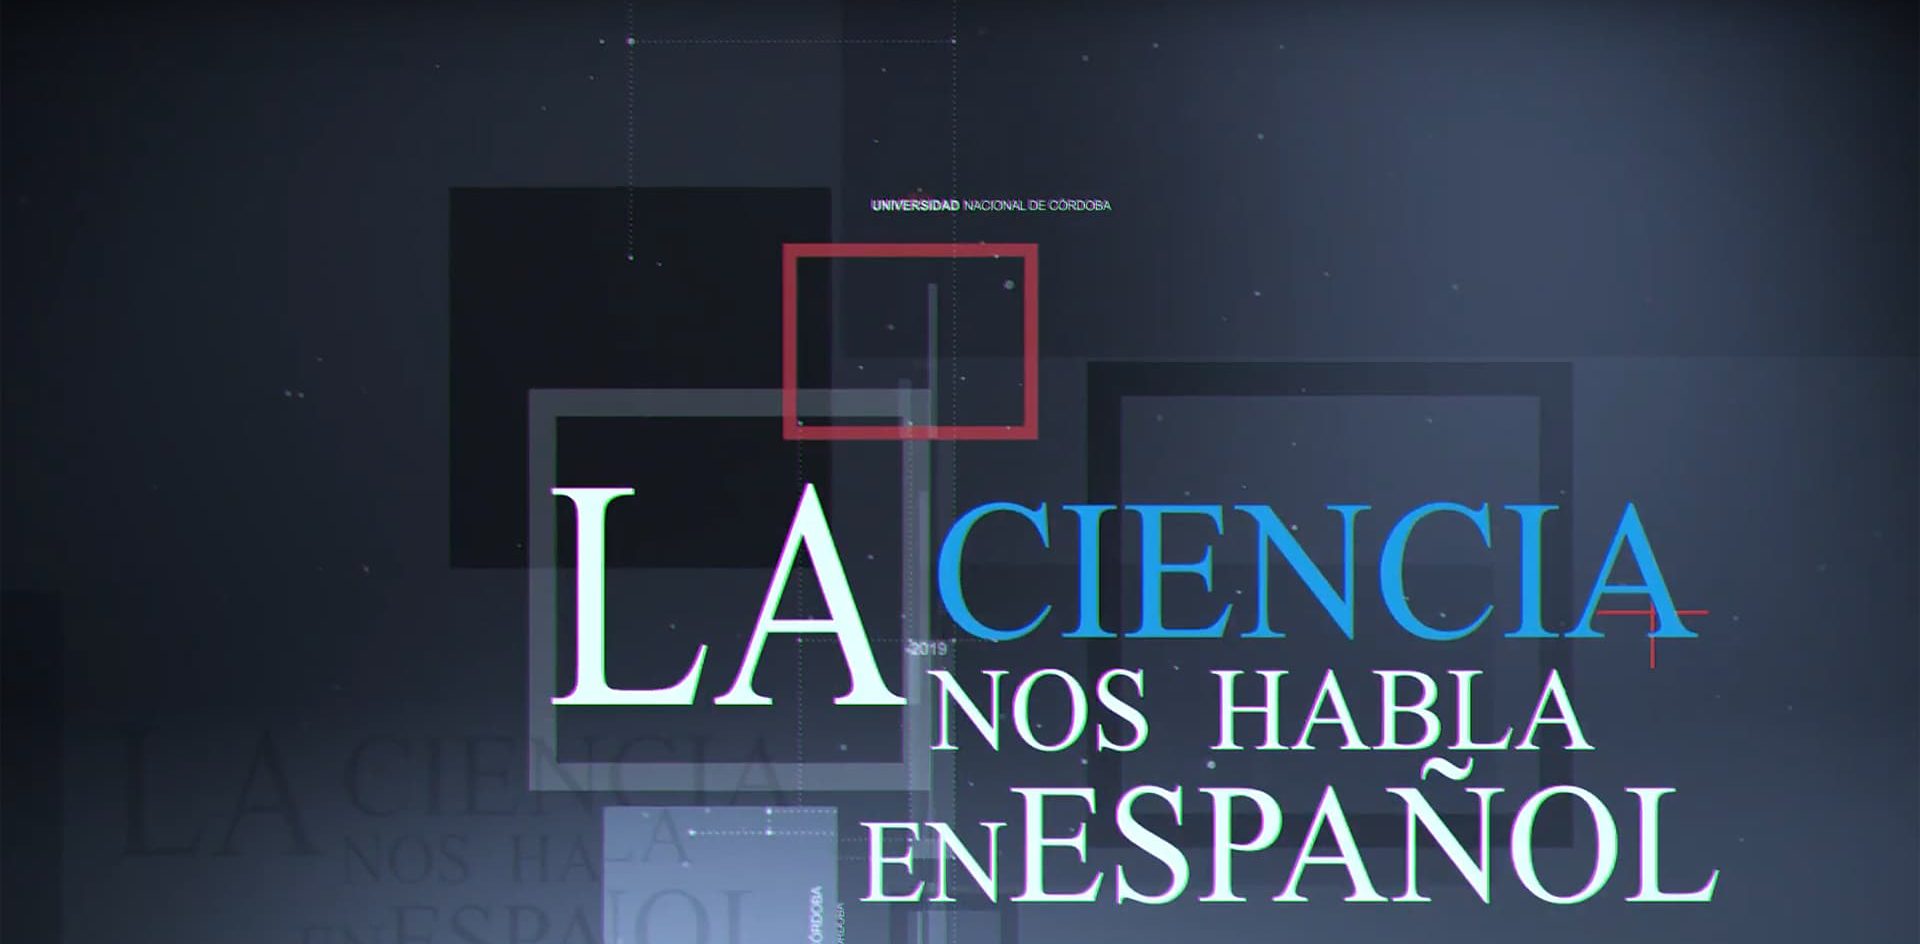 “La ciencia (nos) habla en español”, un proyecto que reivindica el idioma castellano en la comunicación científica